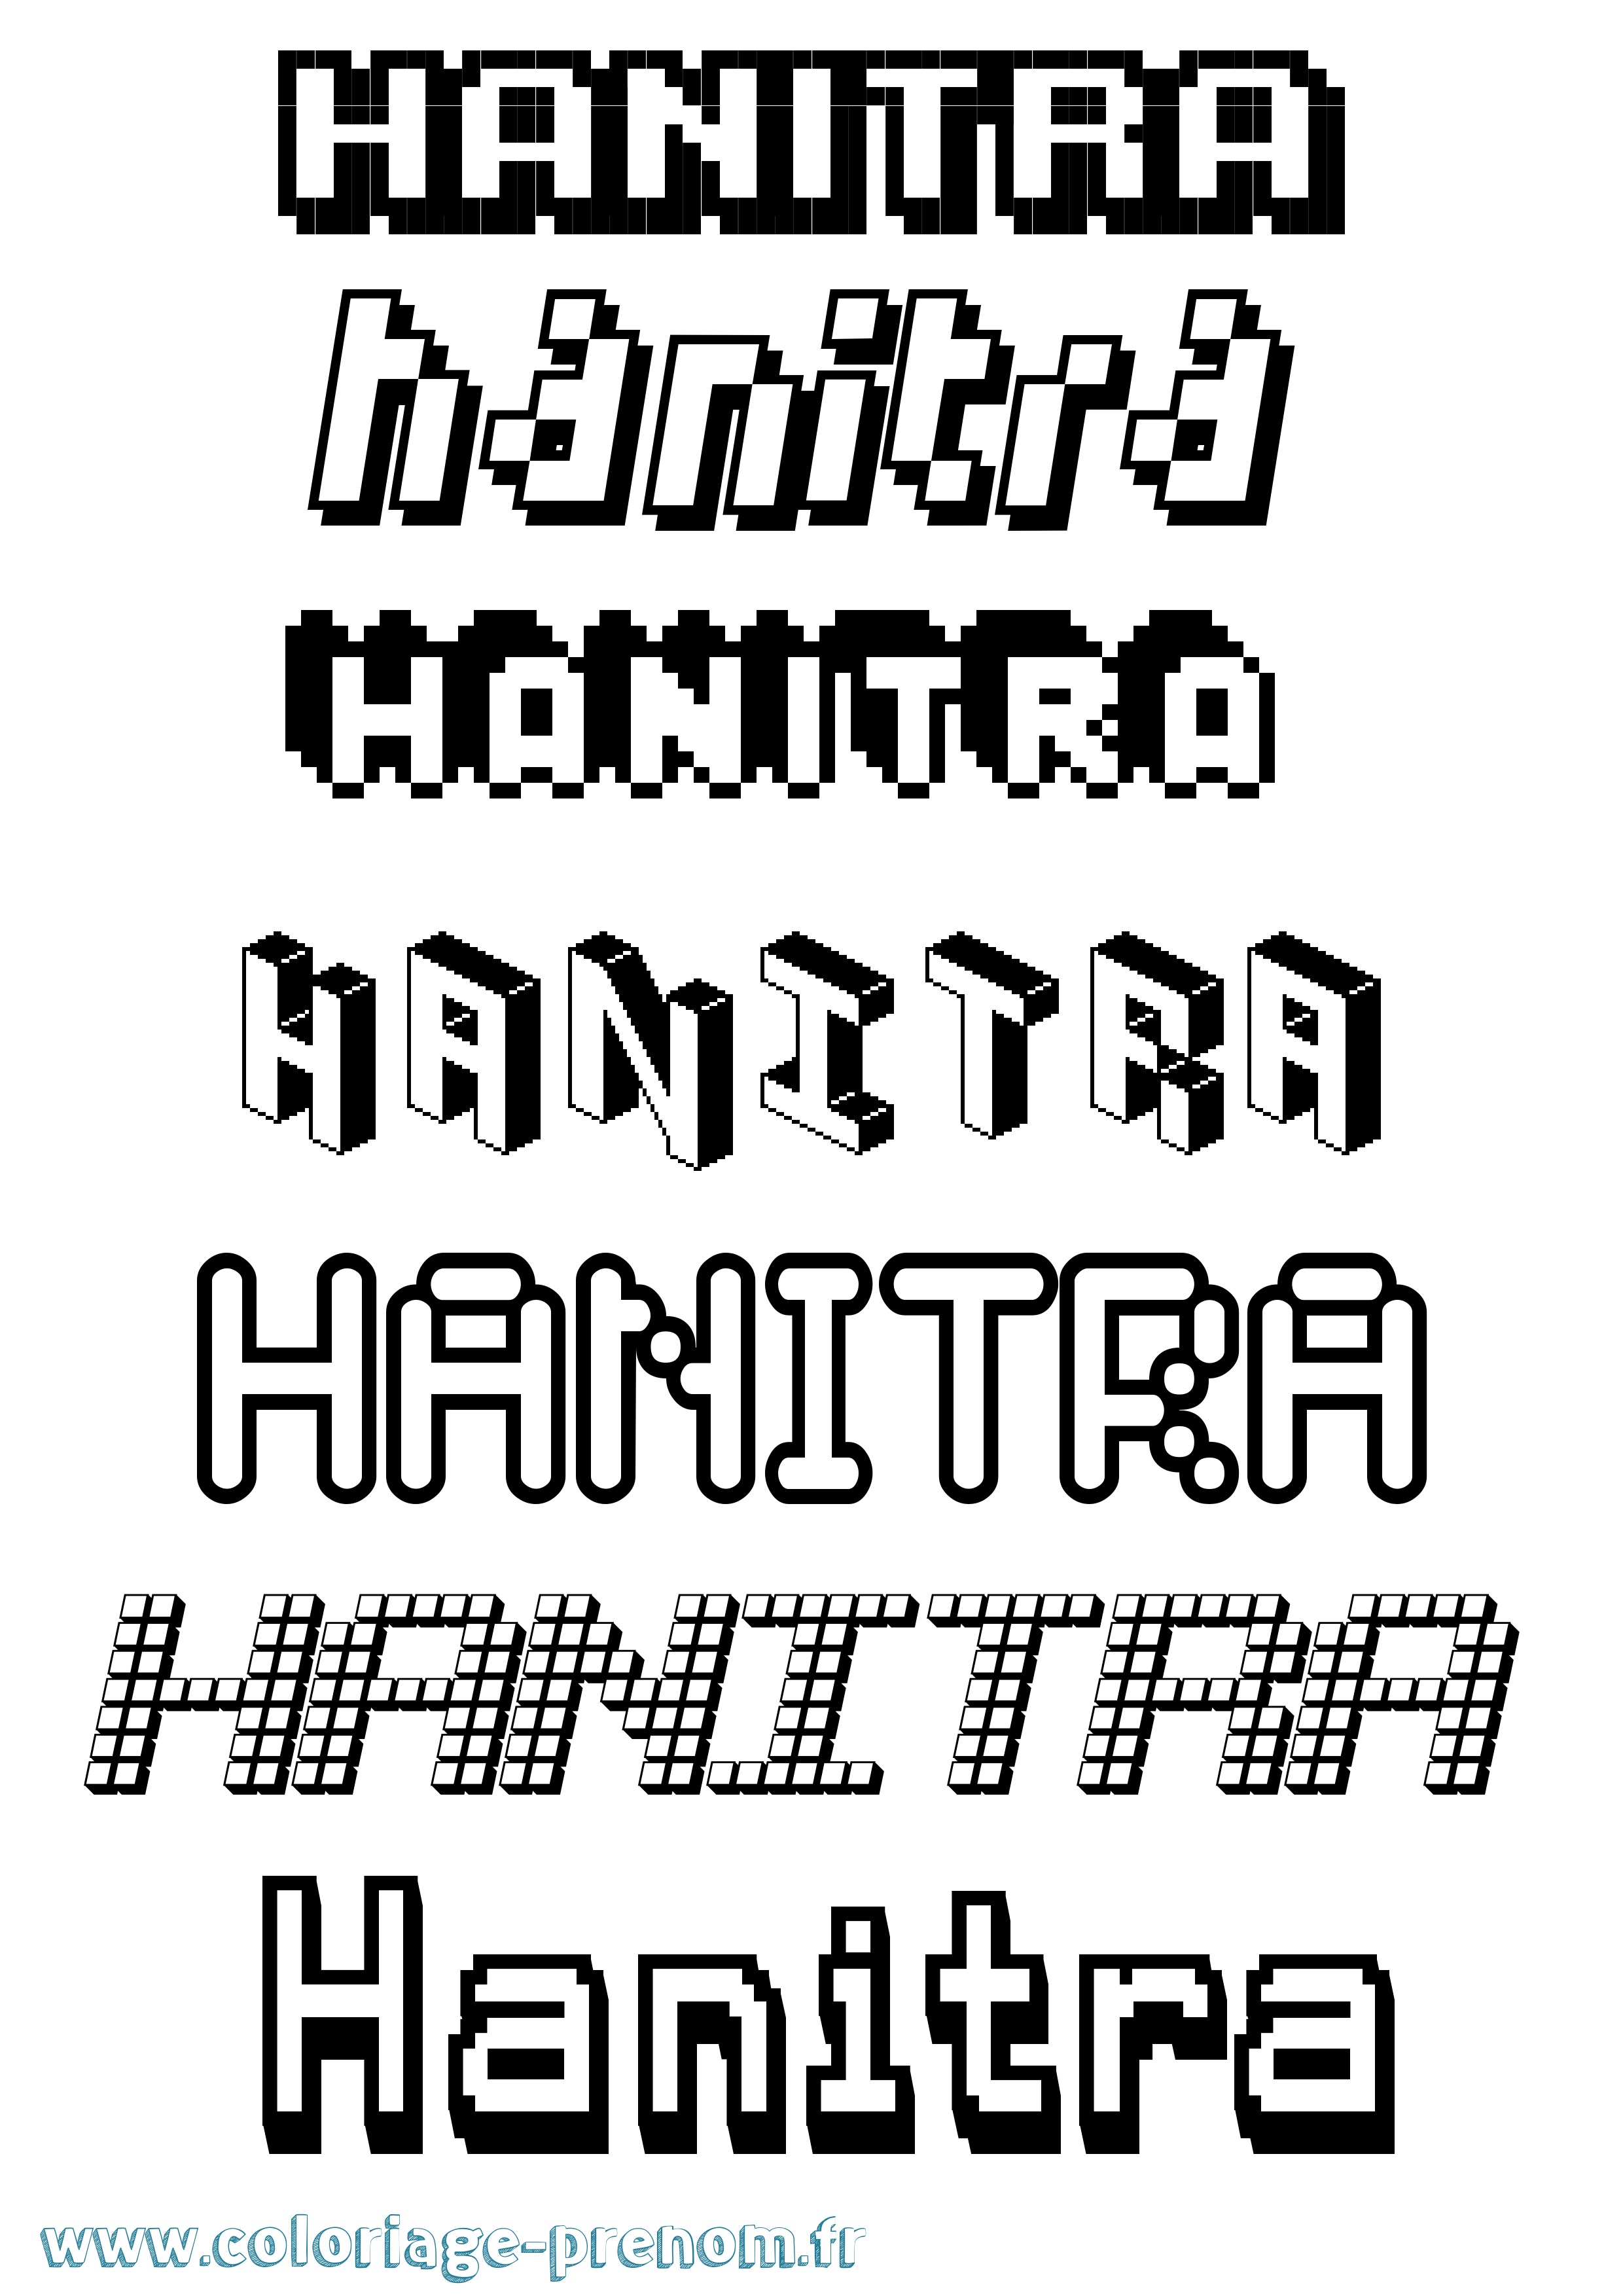 Coloriage prénom Hanitra Pixel